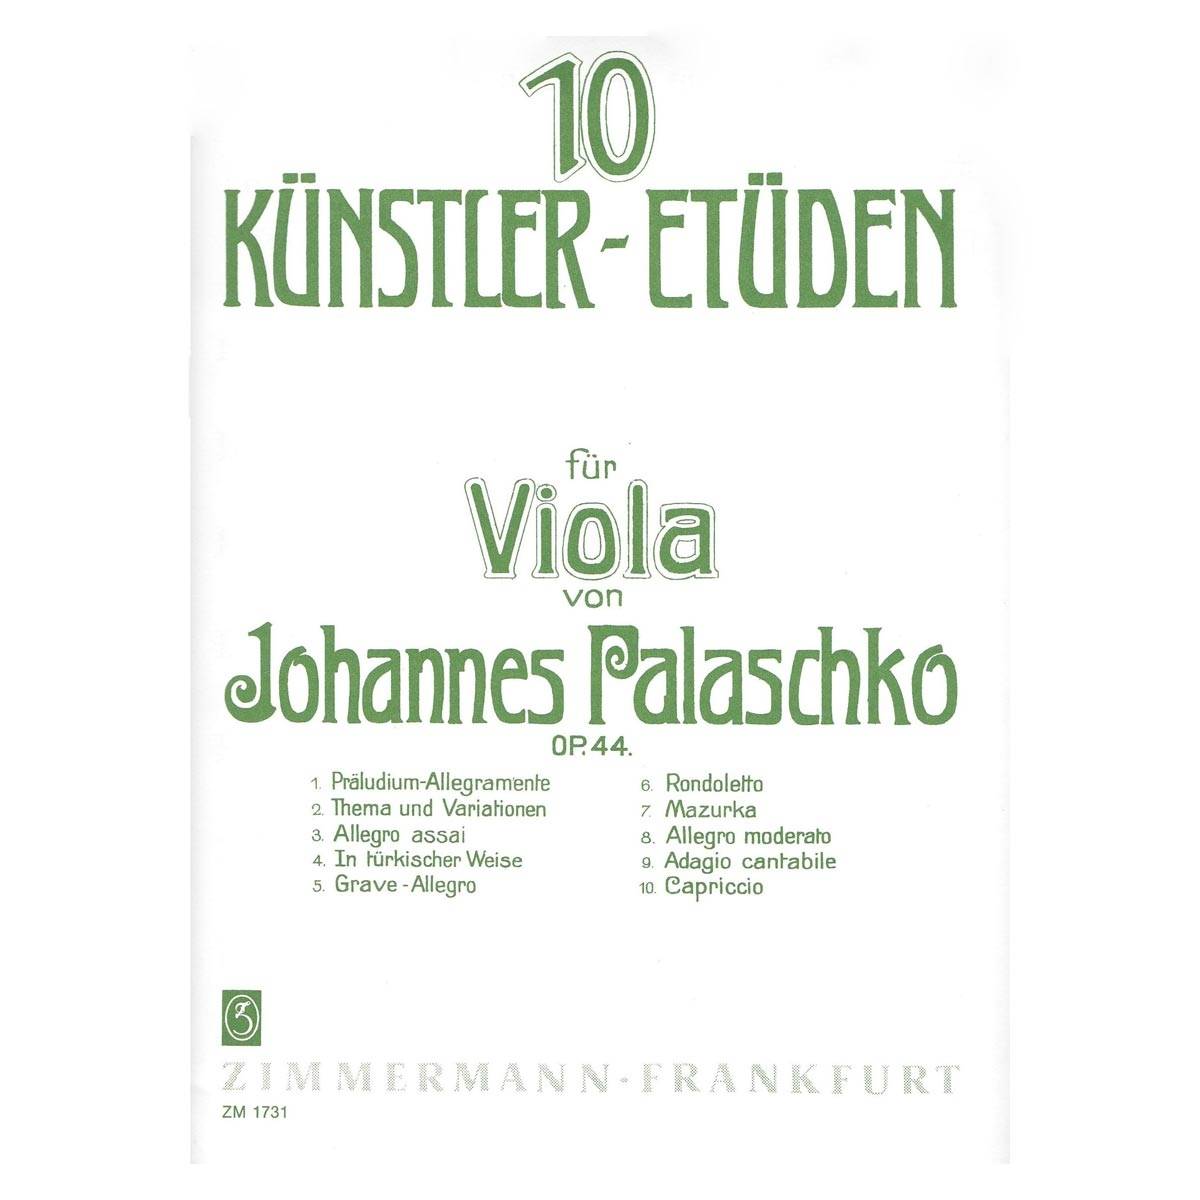 Palaschko - 10 Kunstler - Etuden  Op.44